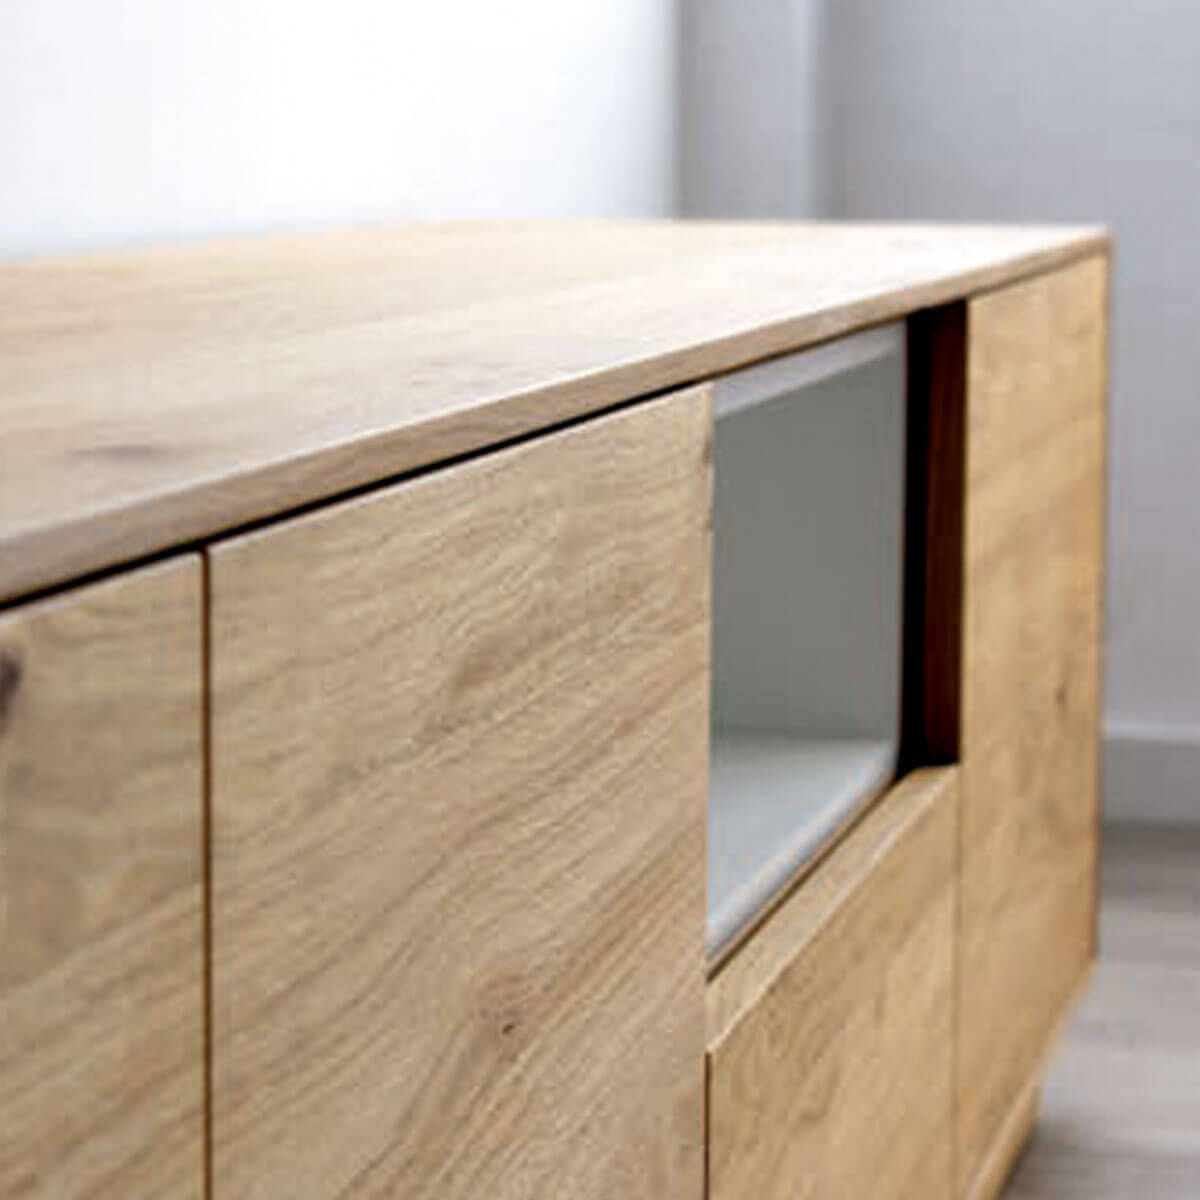 Mueble tv blanco y chapa madera natural - Comprar muebles tv - Artikalia